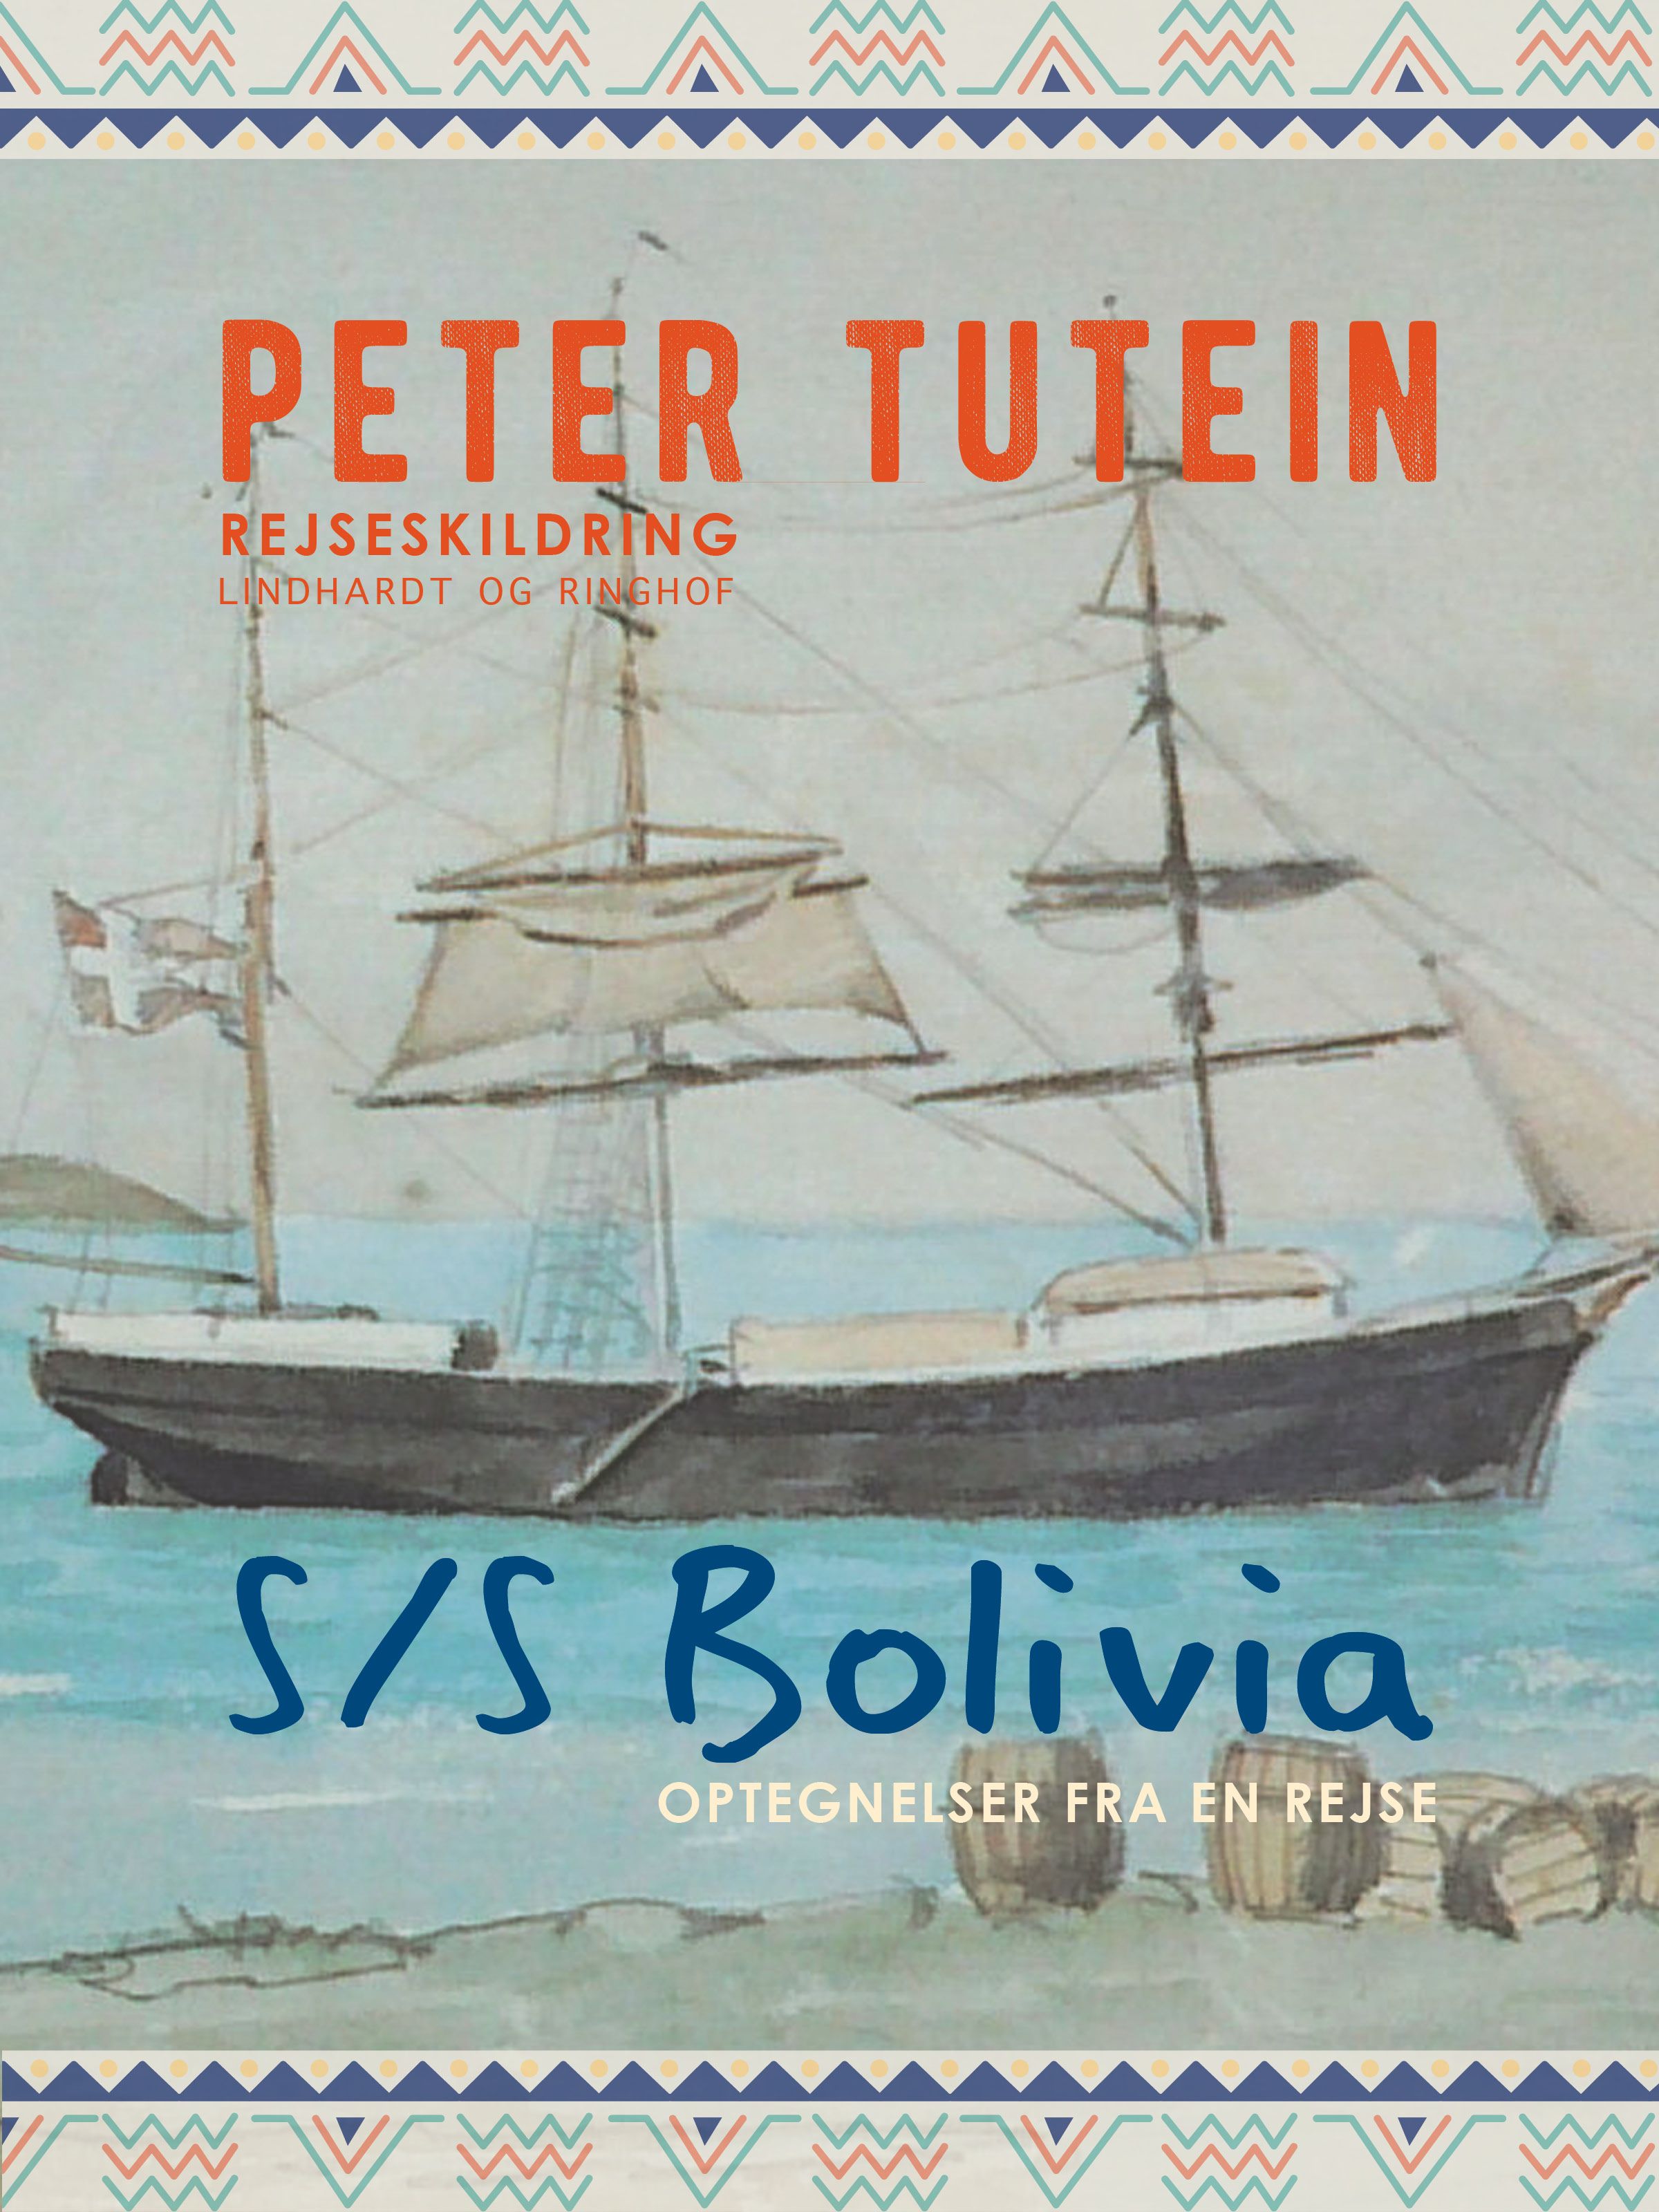 S/S Bolivia: Optegnelser fra en rejse, e-bog af Peter Tutein